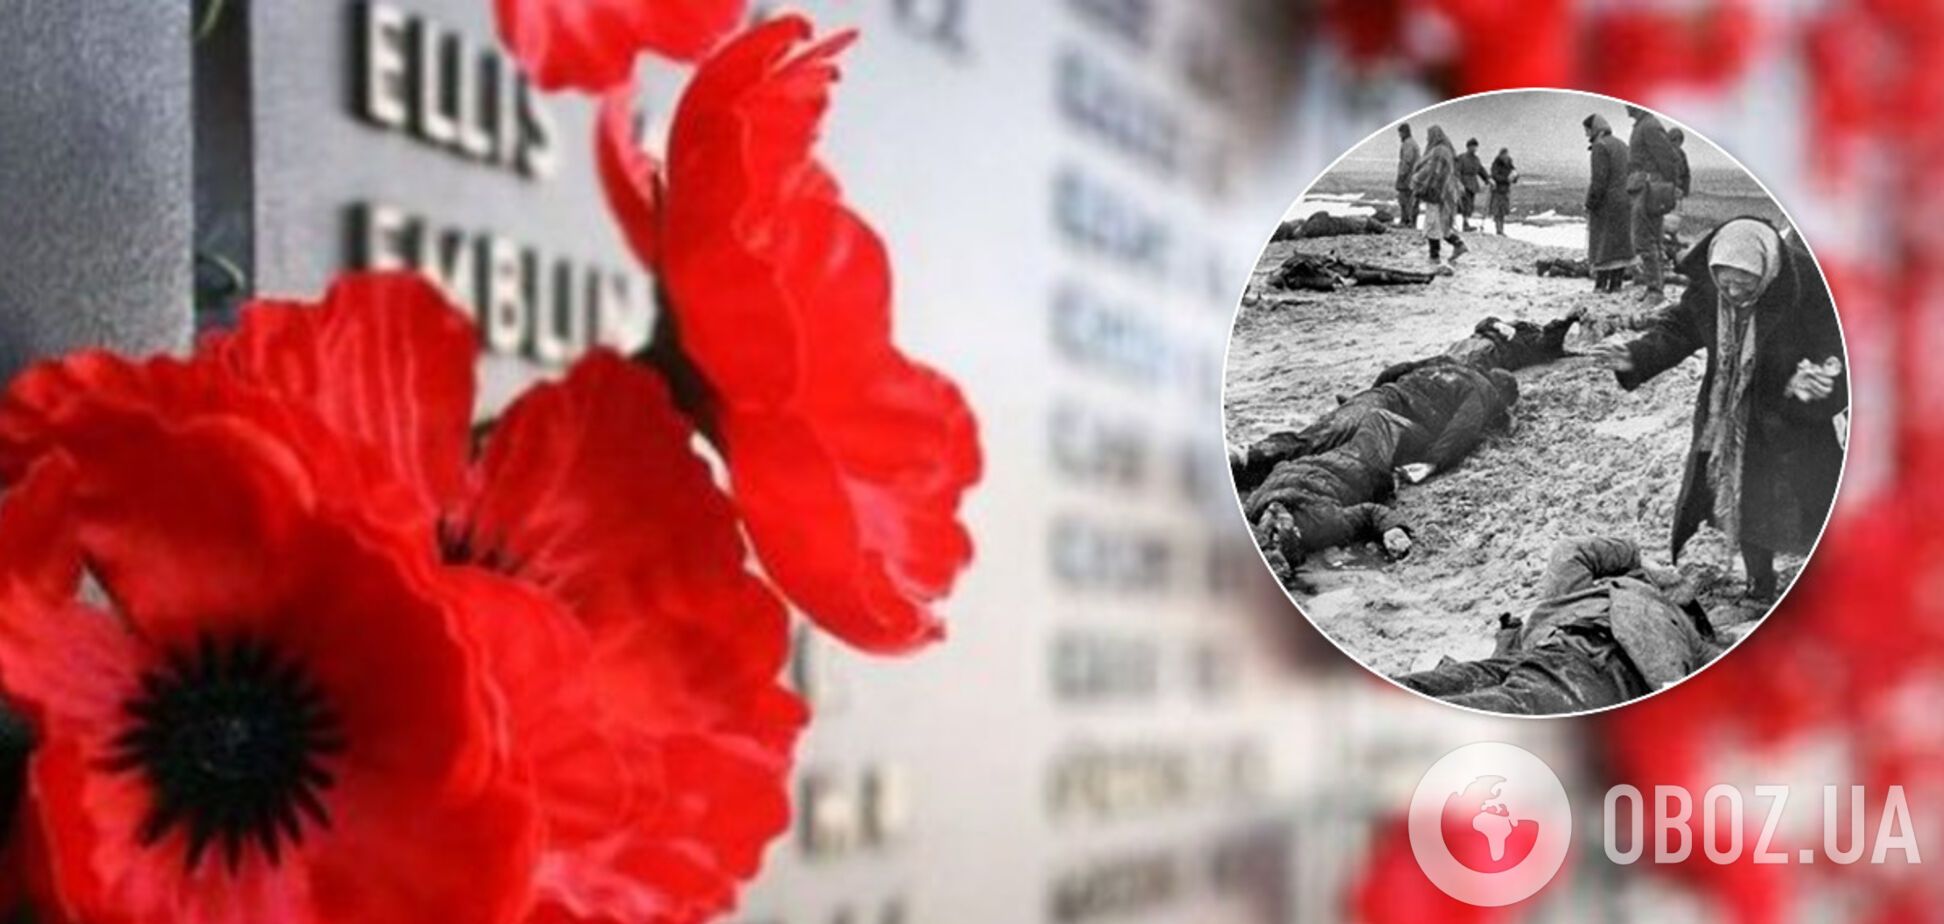 Фашисти вбили кримчан і кинули тіла в рів: несамовите архівне фото сколихнуло мережу (18+)